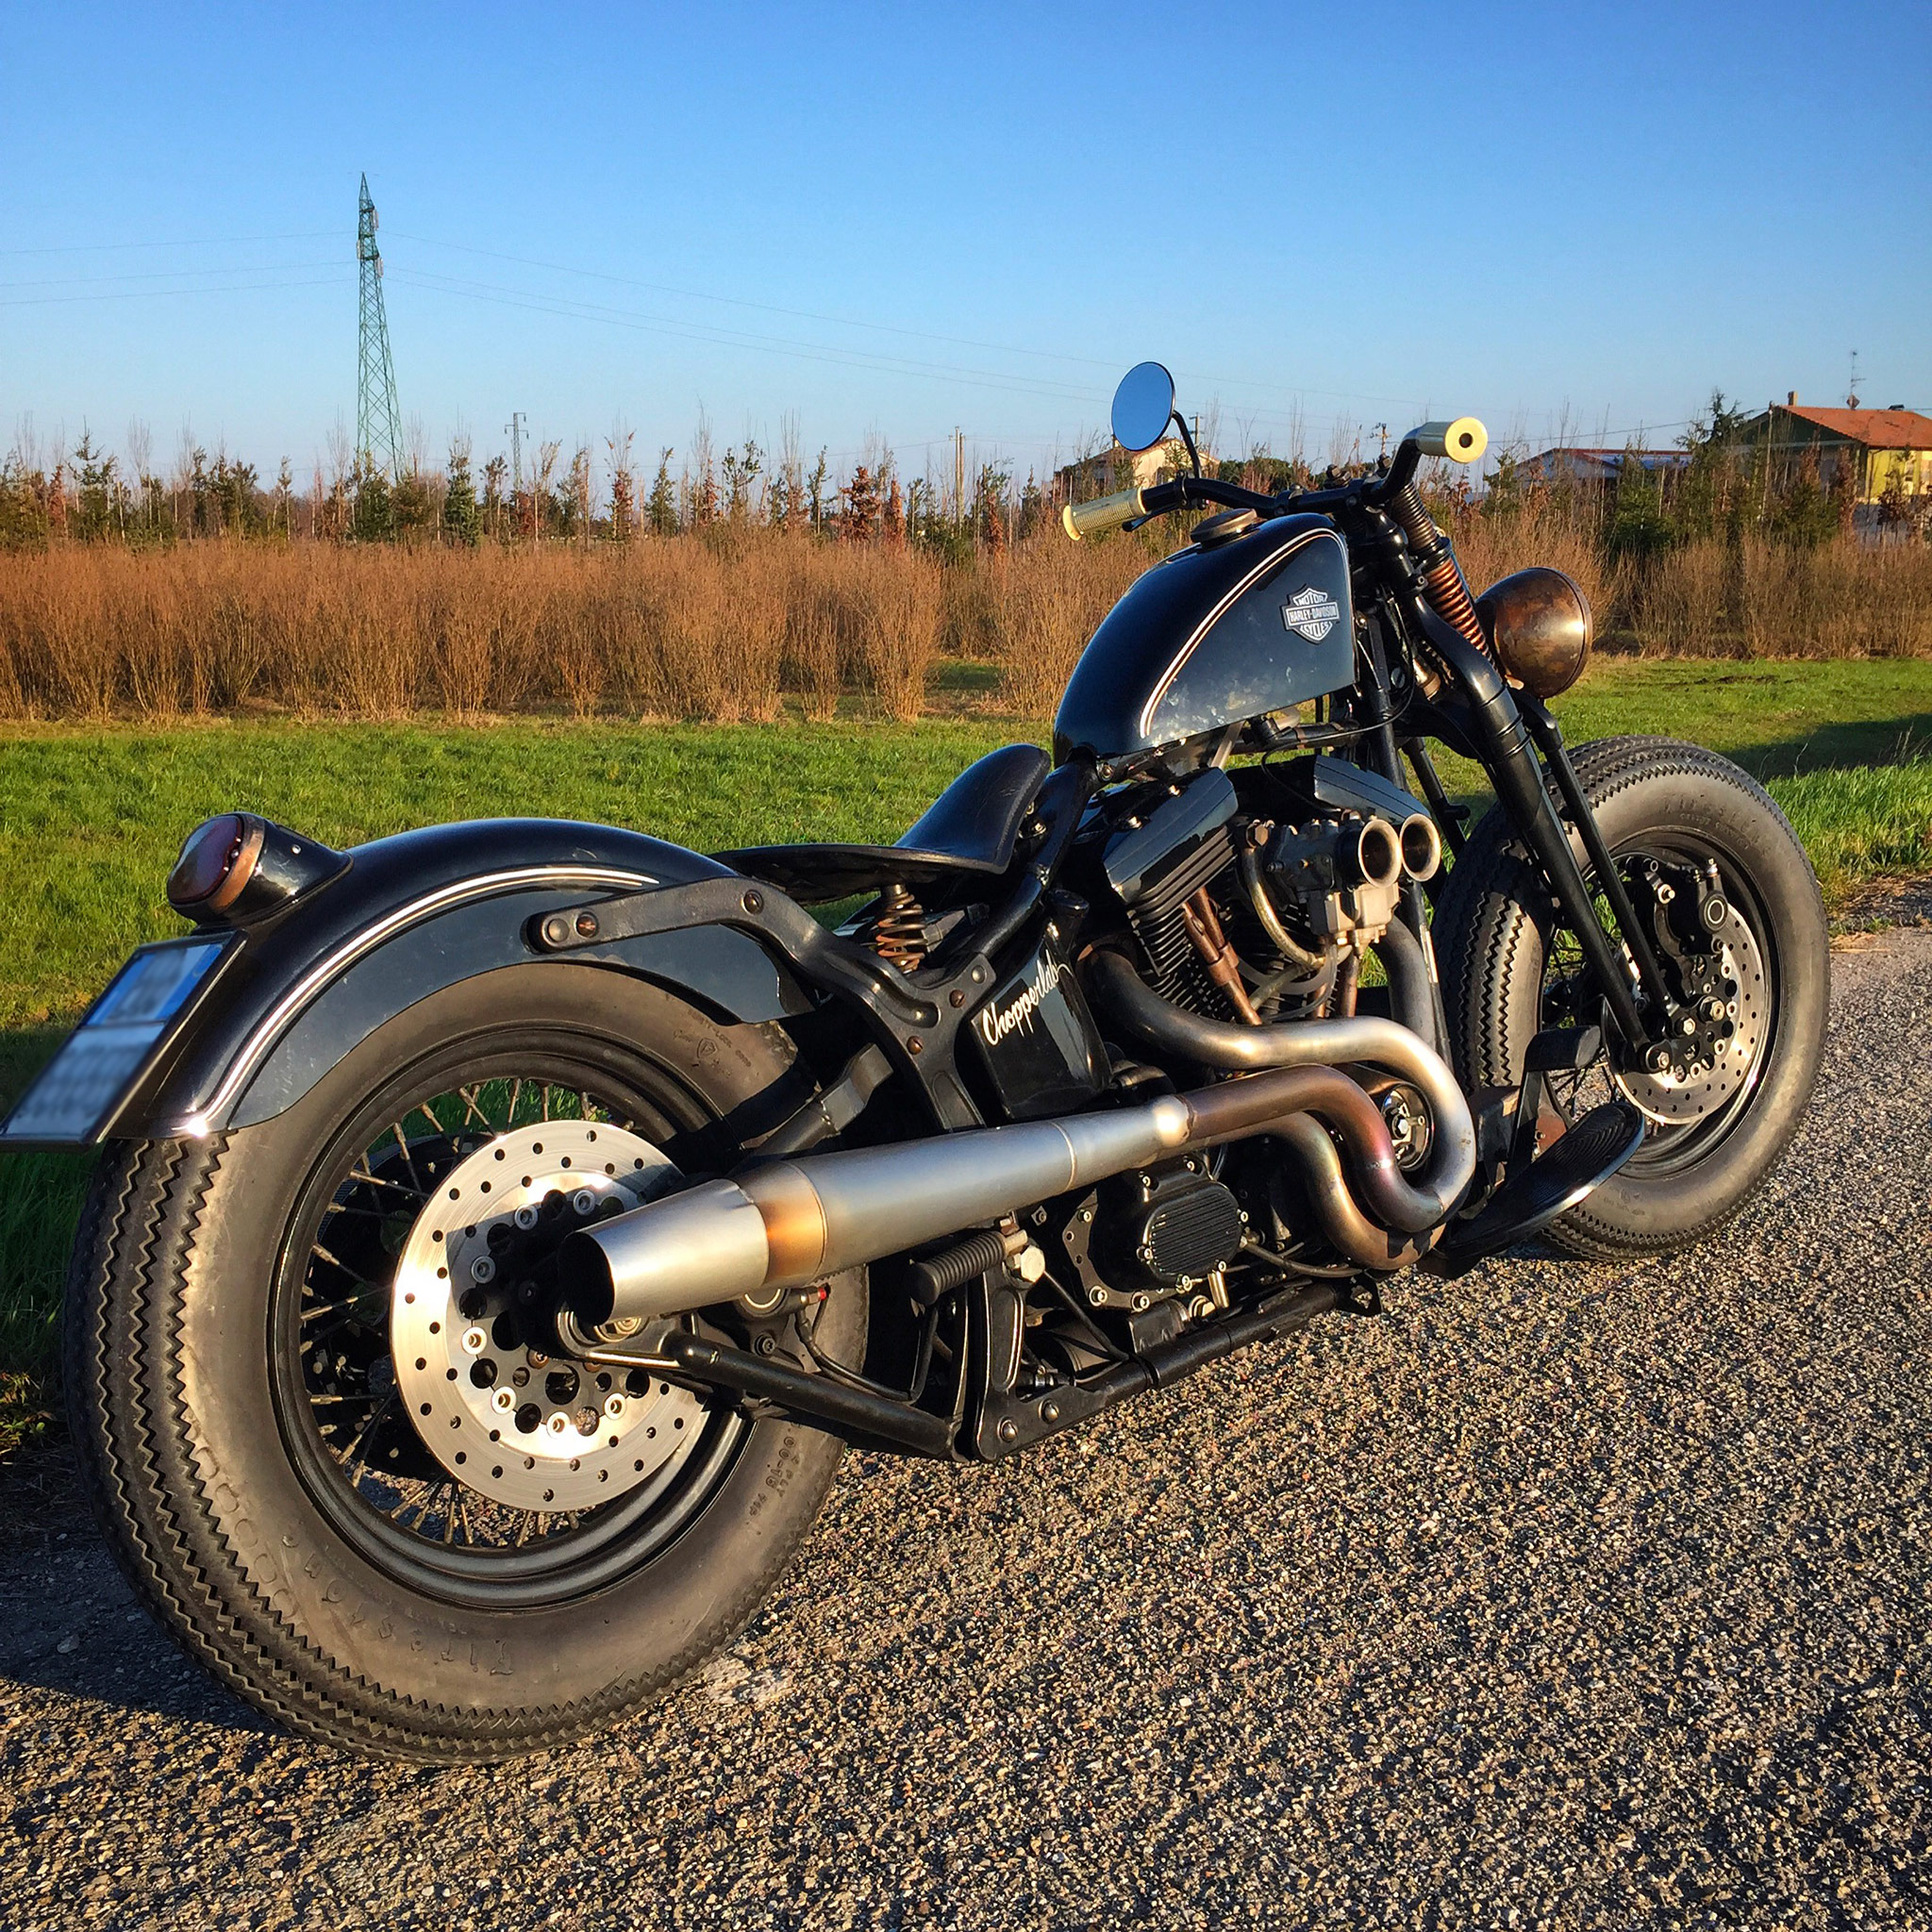 Softail custom bobber Harley Davidson - Chopperlab